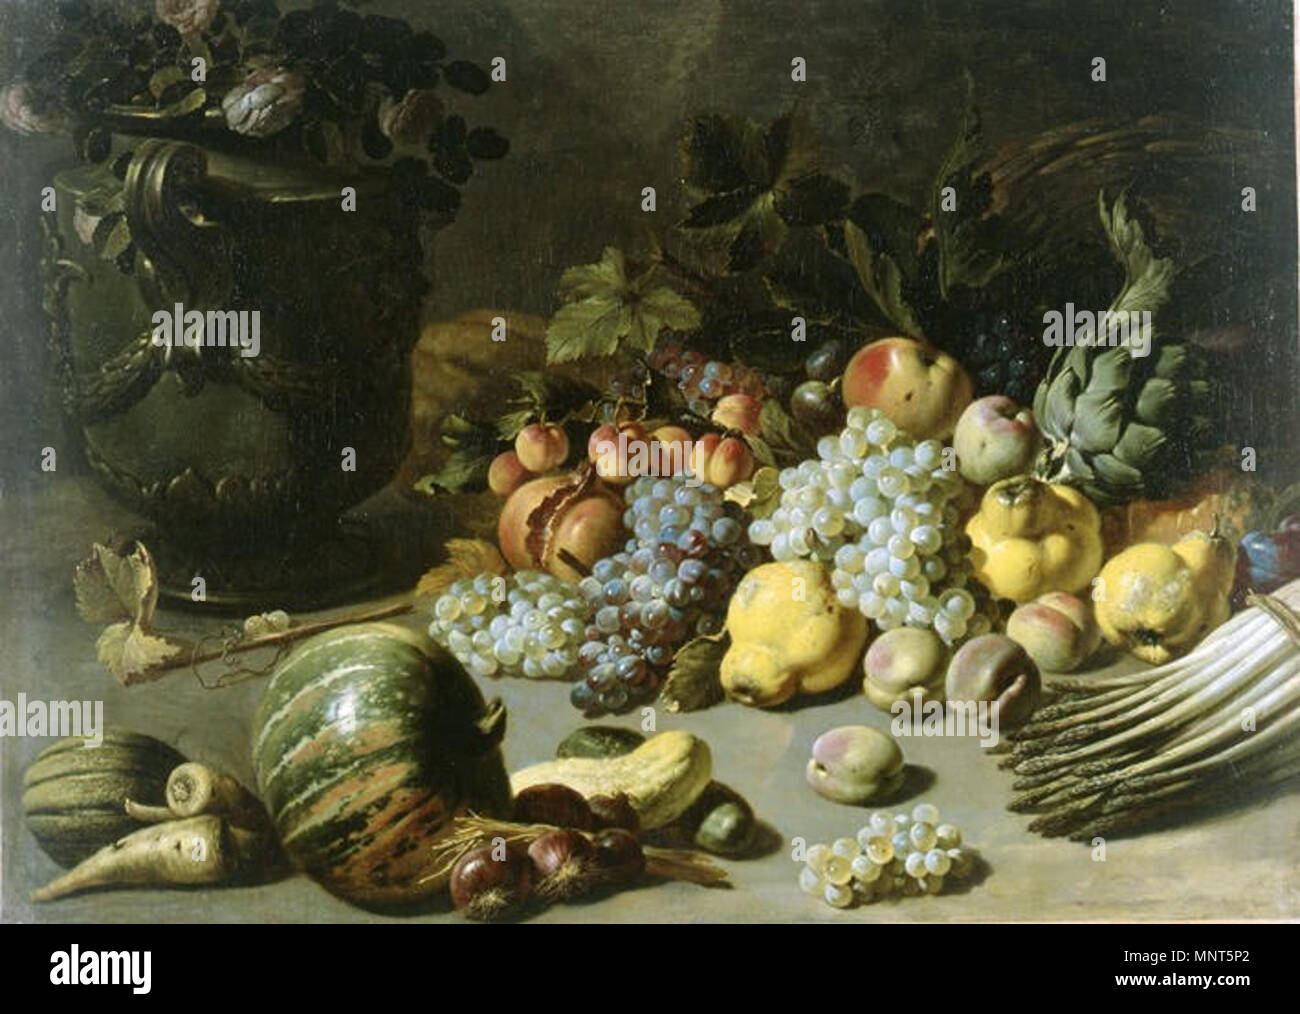 978 Peter van Boucle - une nature morte avec fruits, légumes en provenance d'un panier renversé et de fleurs dans un vase Banque D'Images